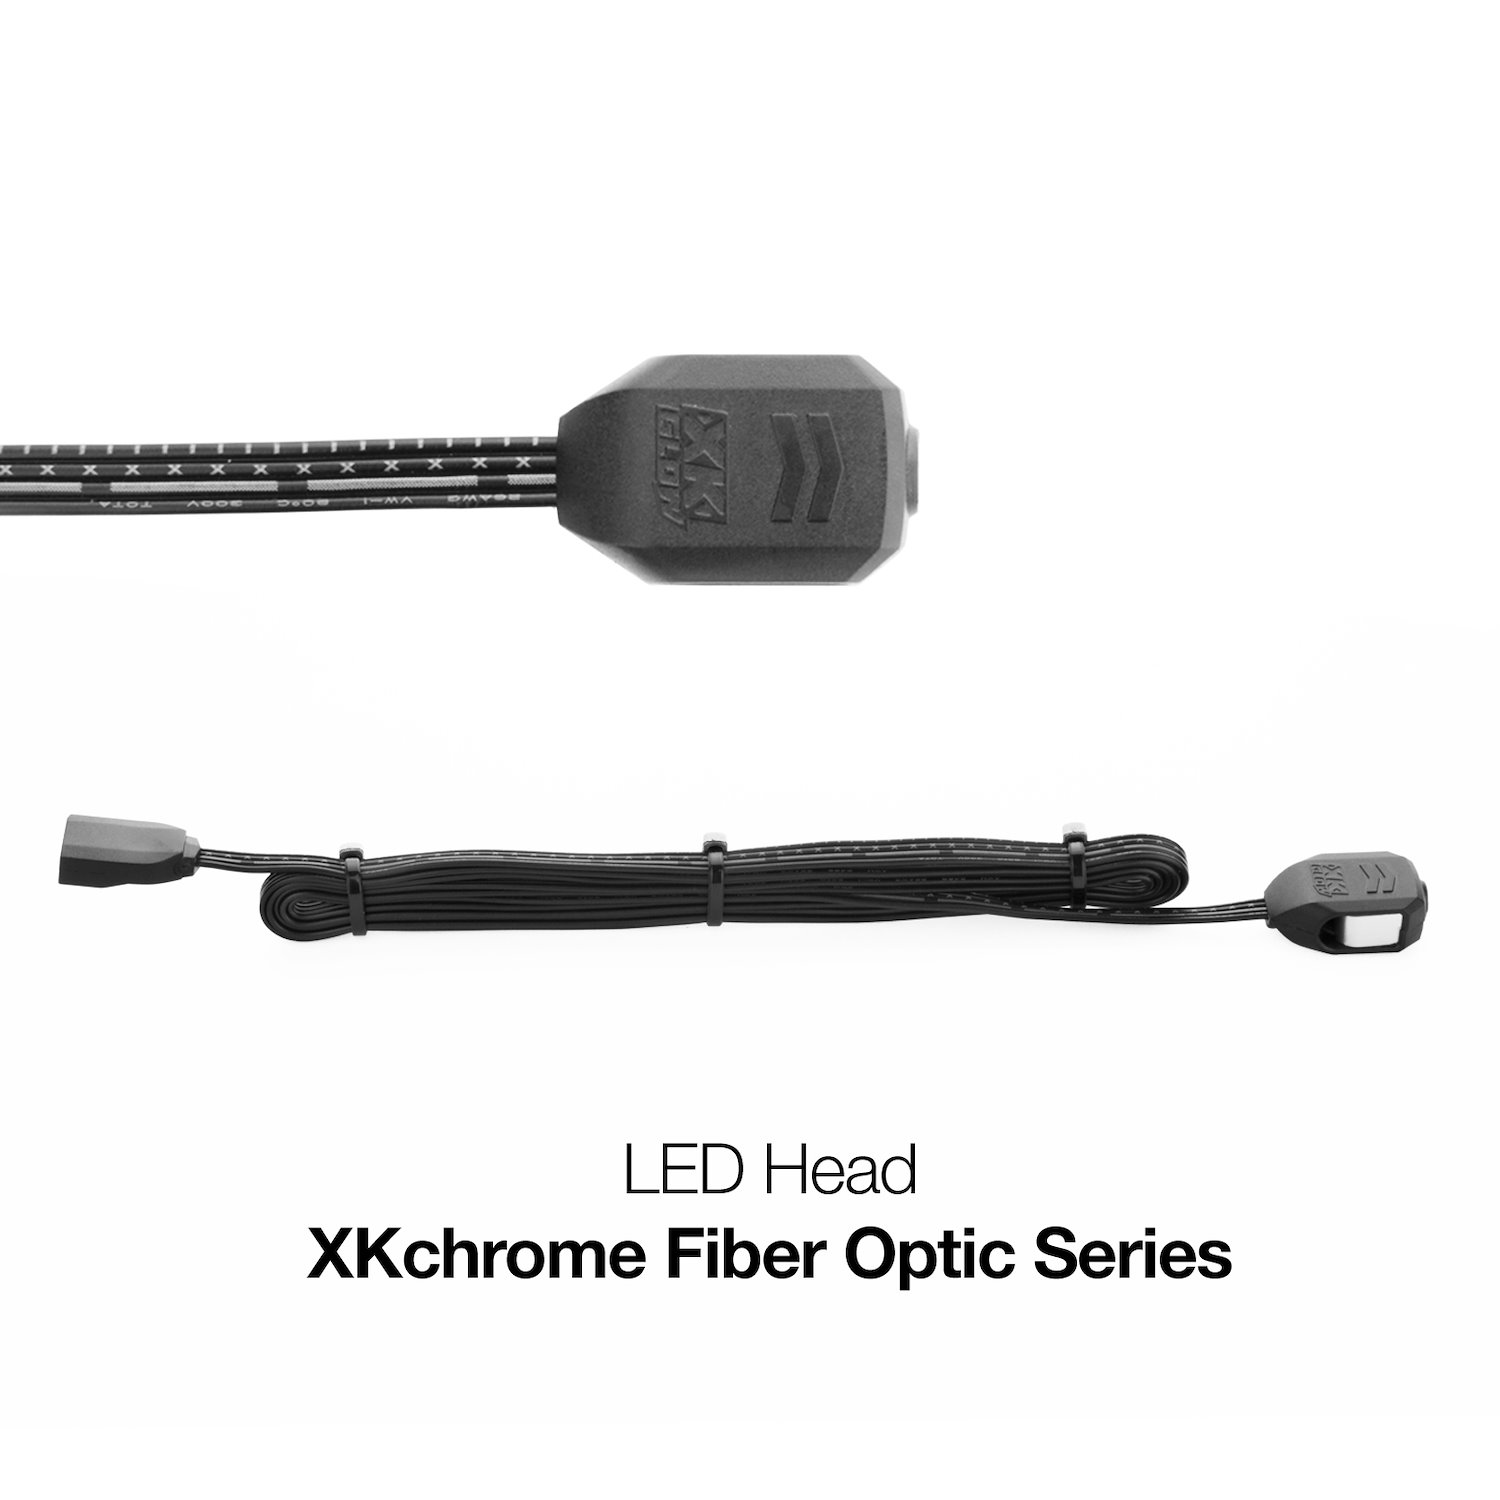 XK-FO-HEAD Fiber Optic Series XKCHROME RGB Ultra Bright LED Head, Universal Fit